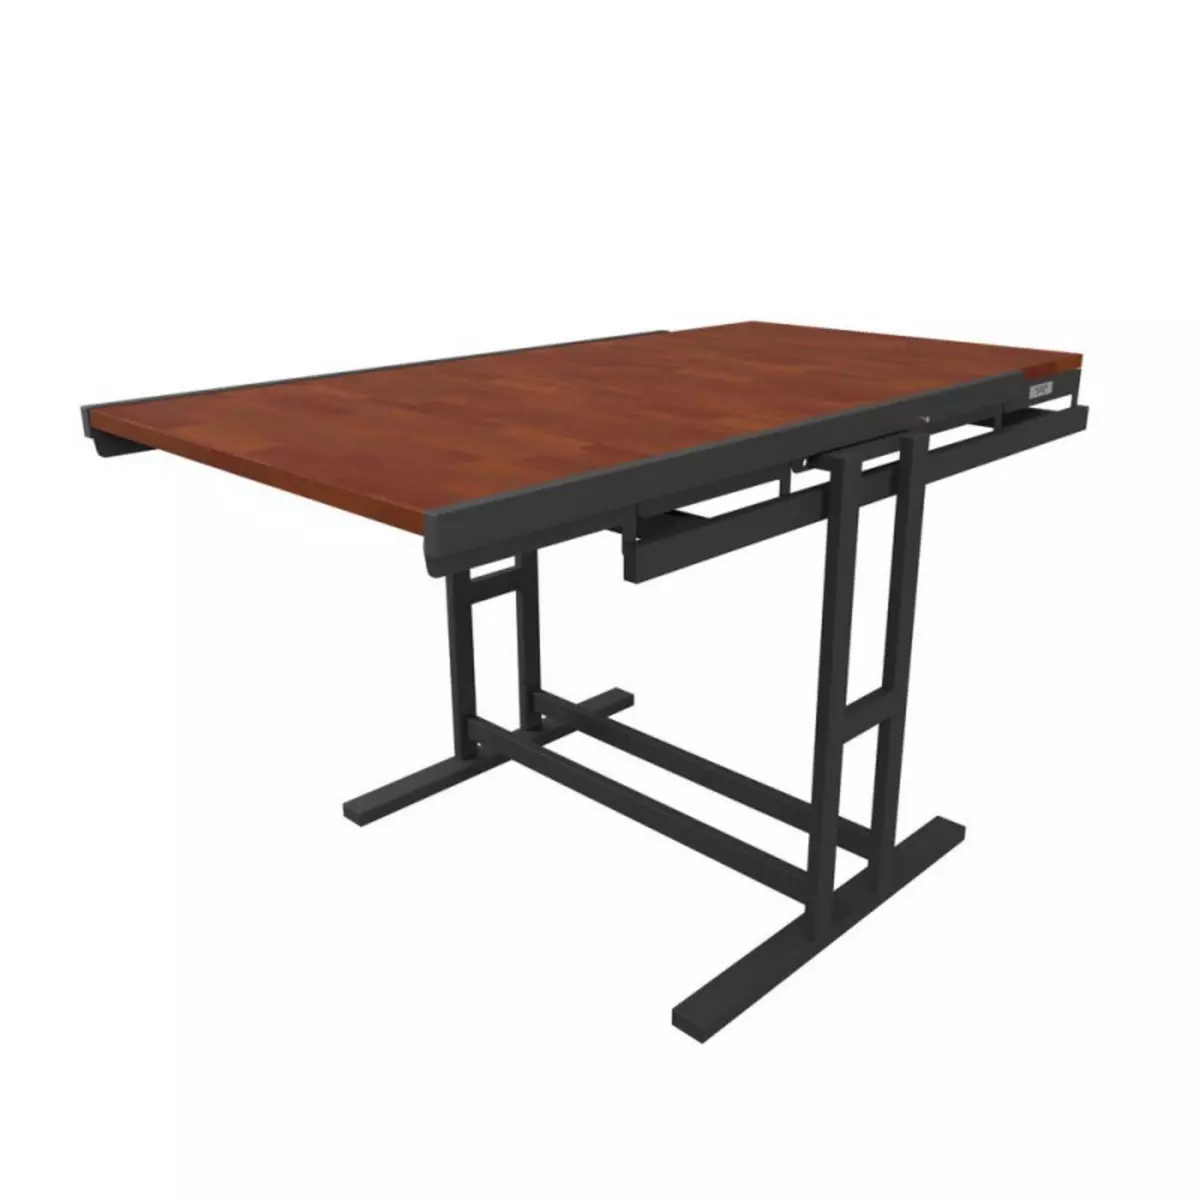 BLUMIE Table modulable en Bois (L120 x l78 x H77,5 cm) convertible en Etagère - style industriel - Couleur Chêne naturel